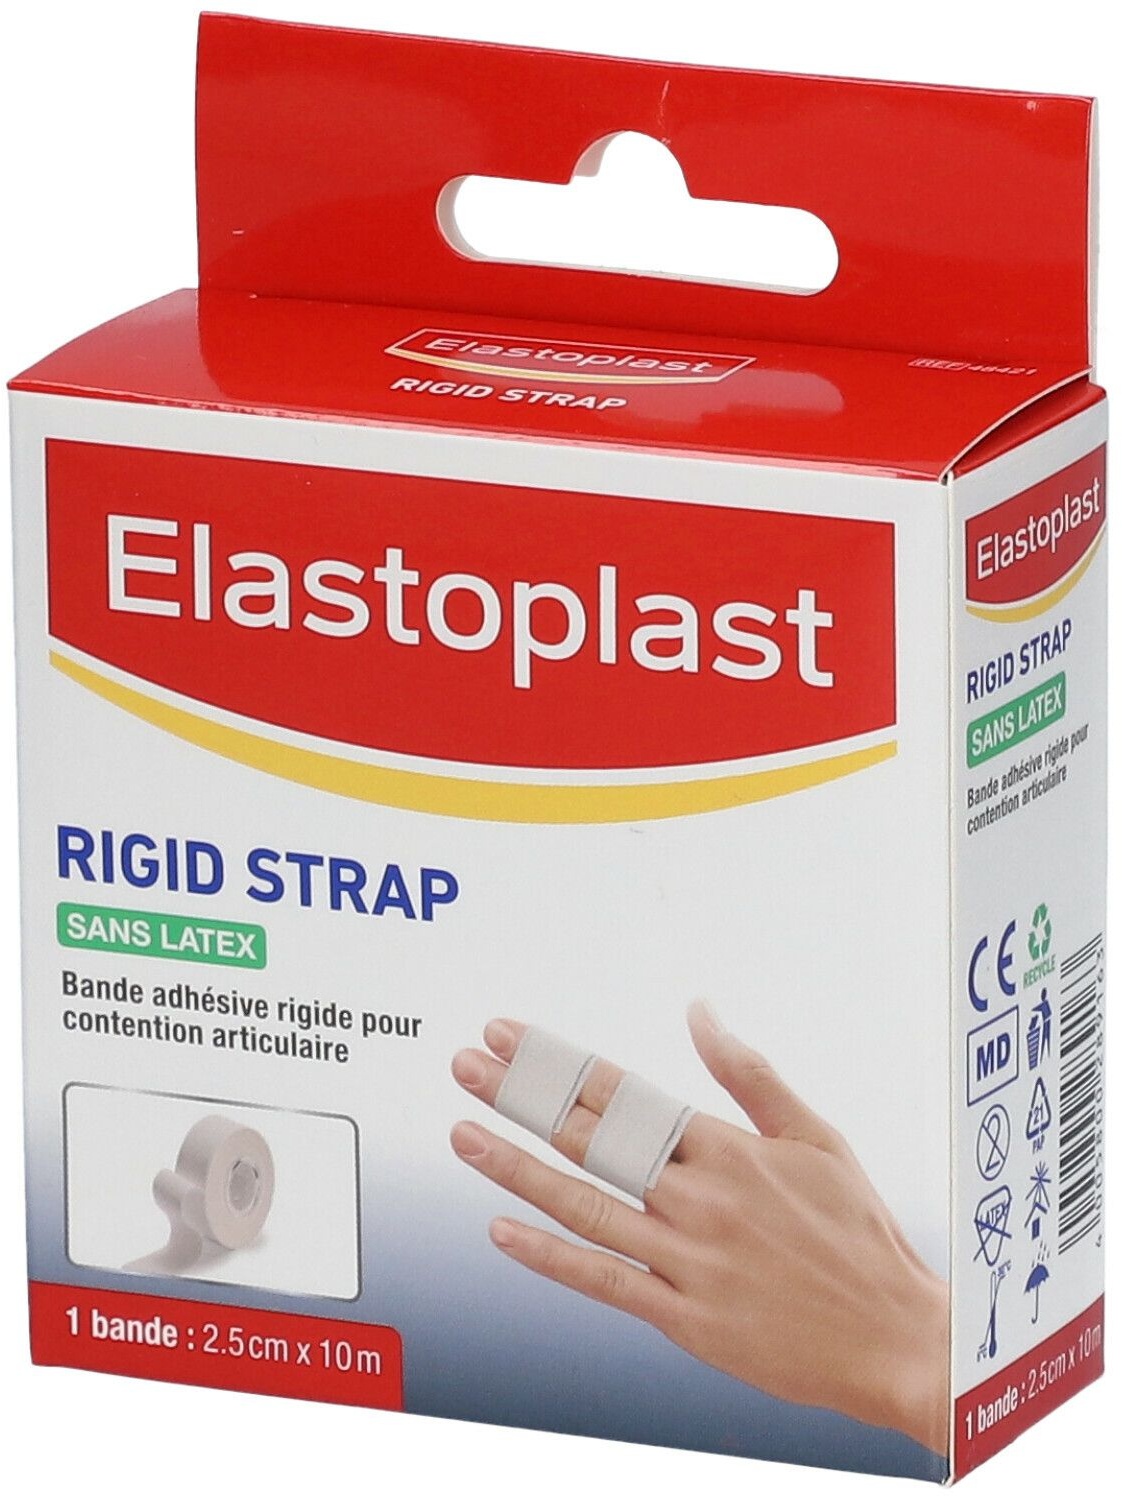 Elastoplast Rigid Strap Doigt 2,5 cm x 10 m 10 pc(s) pansement(s)